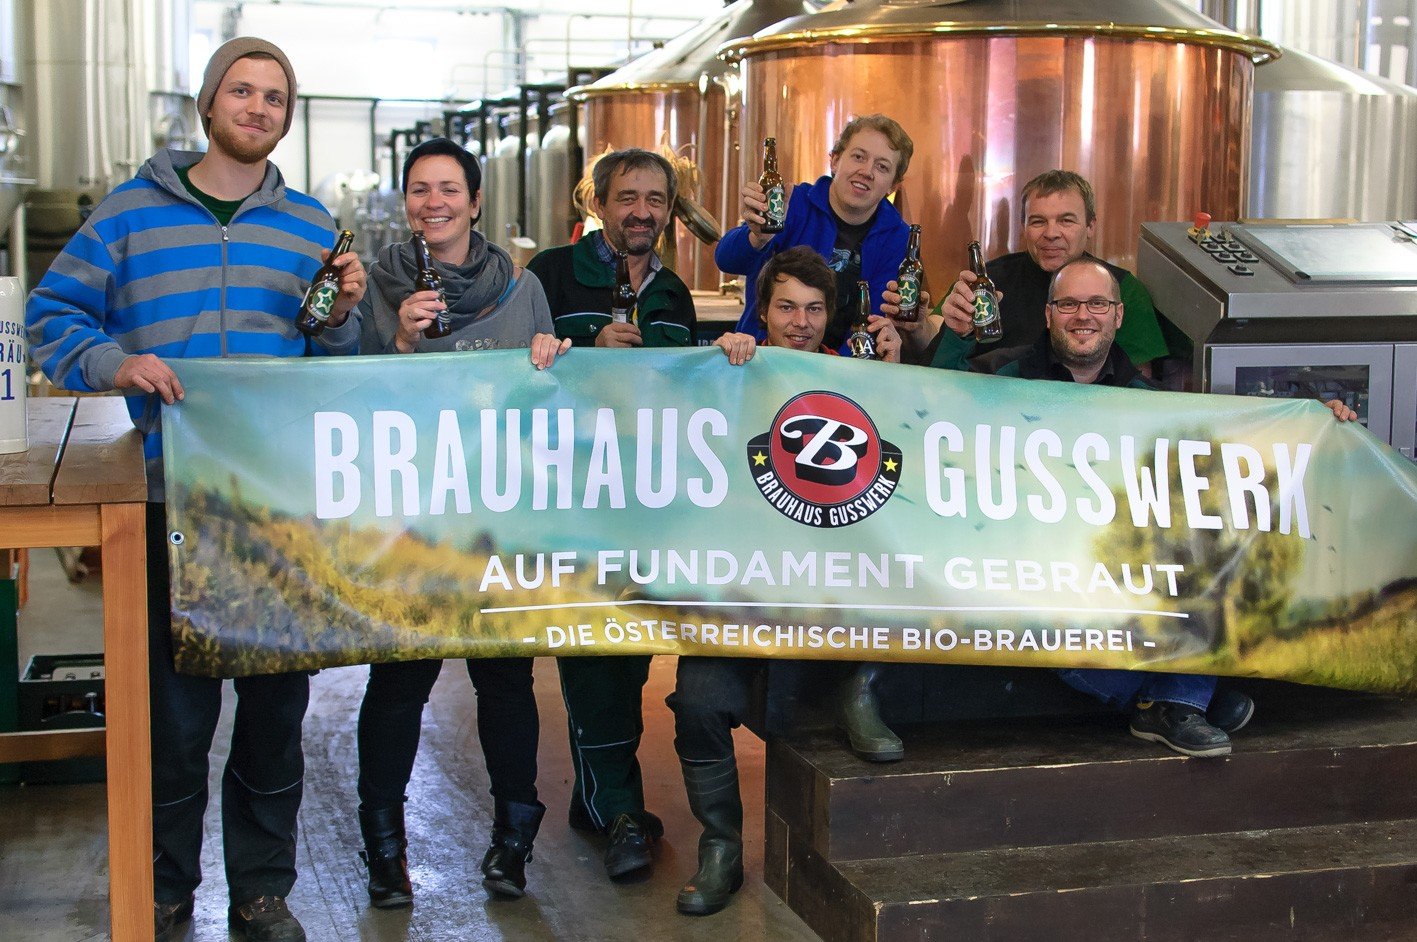 Brauhaus Gusswerk Brauerei aus Österreich